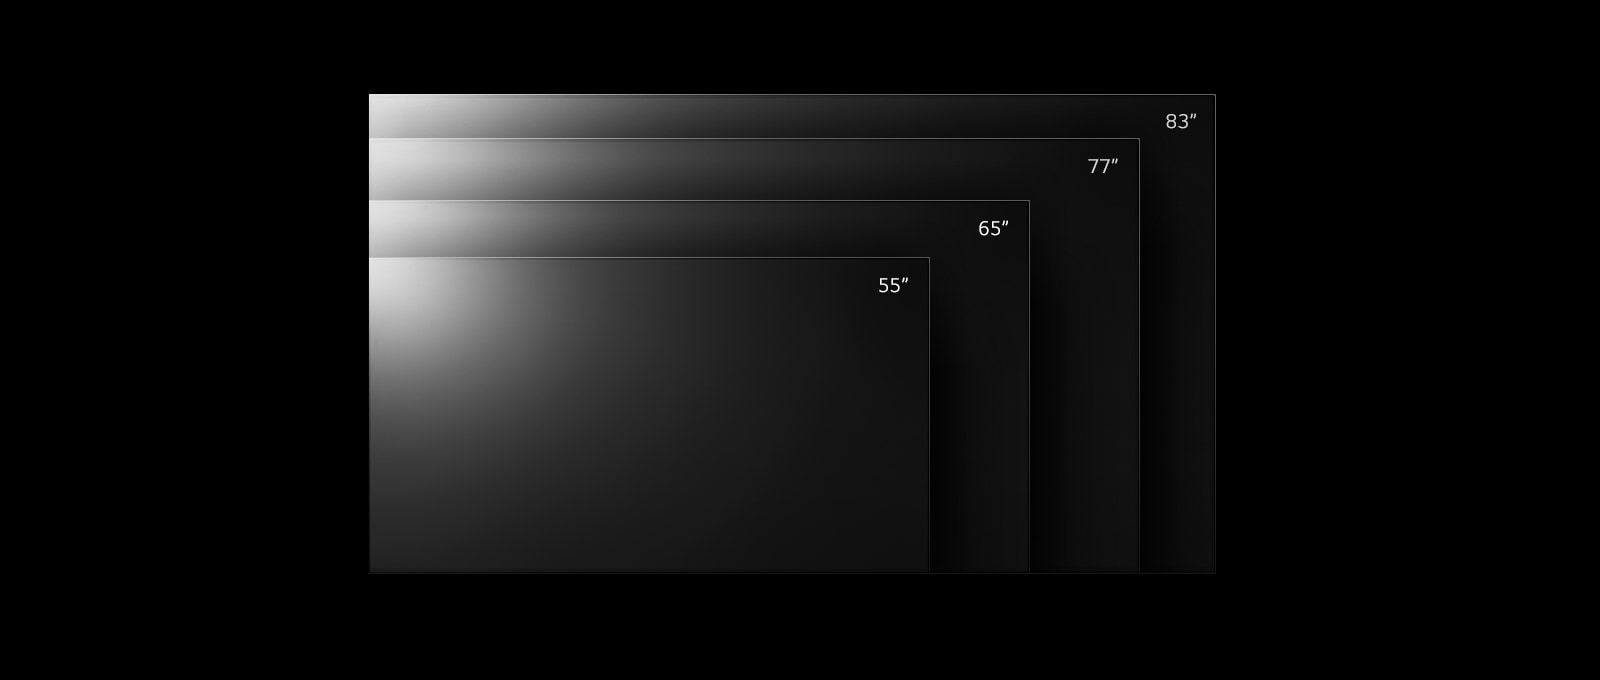 Řada TV LG OLED G2 v různých velikostech od 55 palců do 83 palců